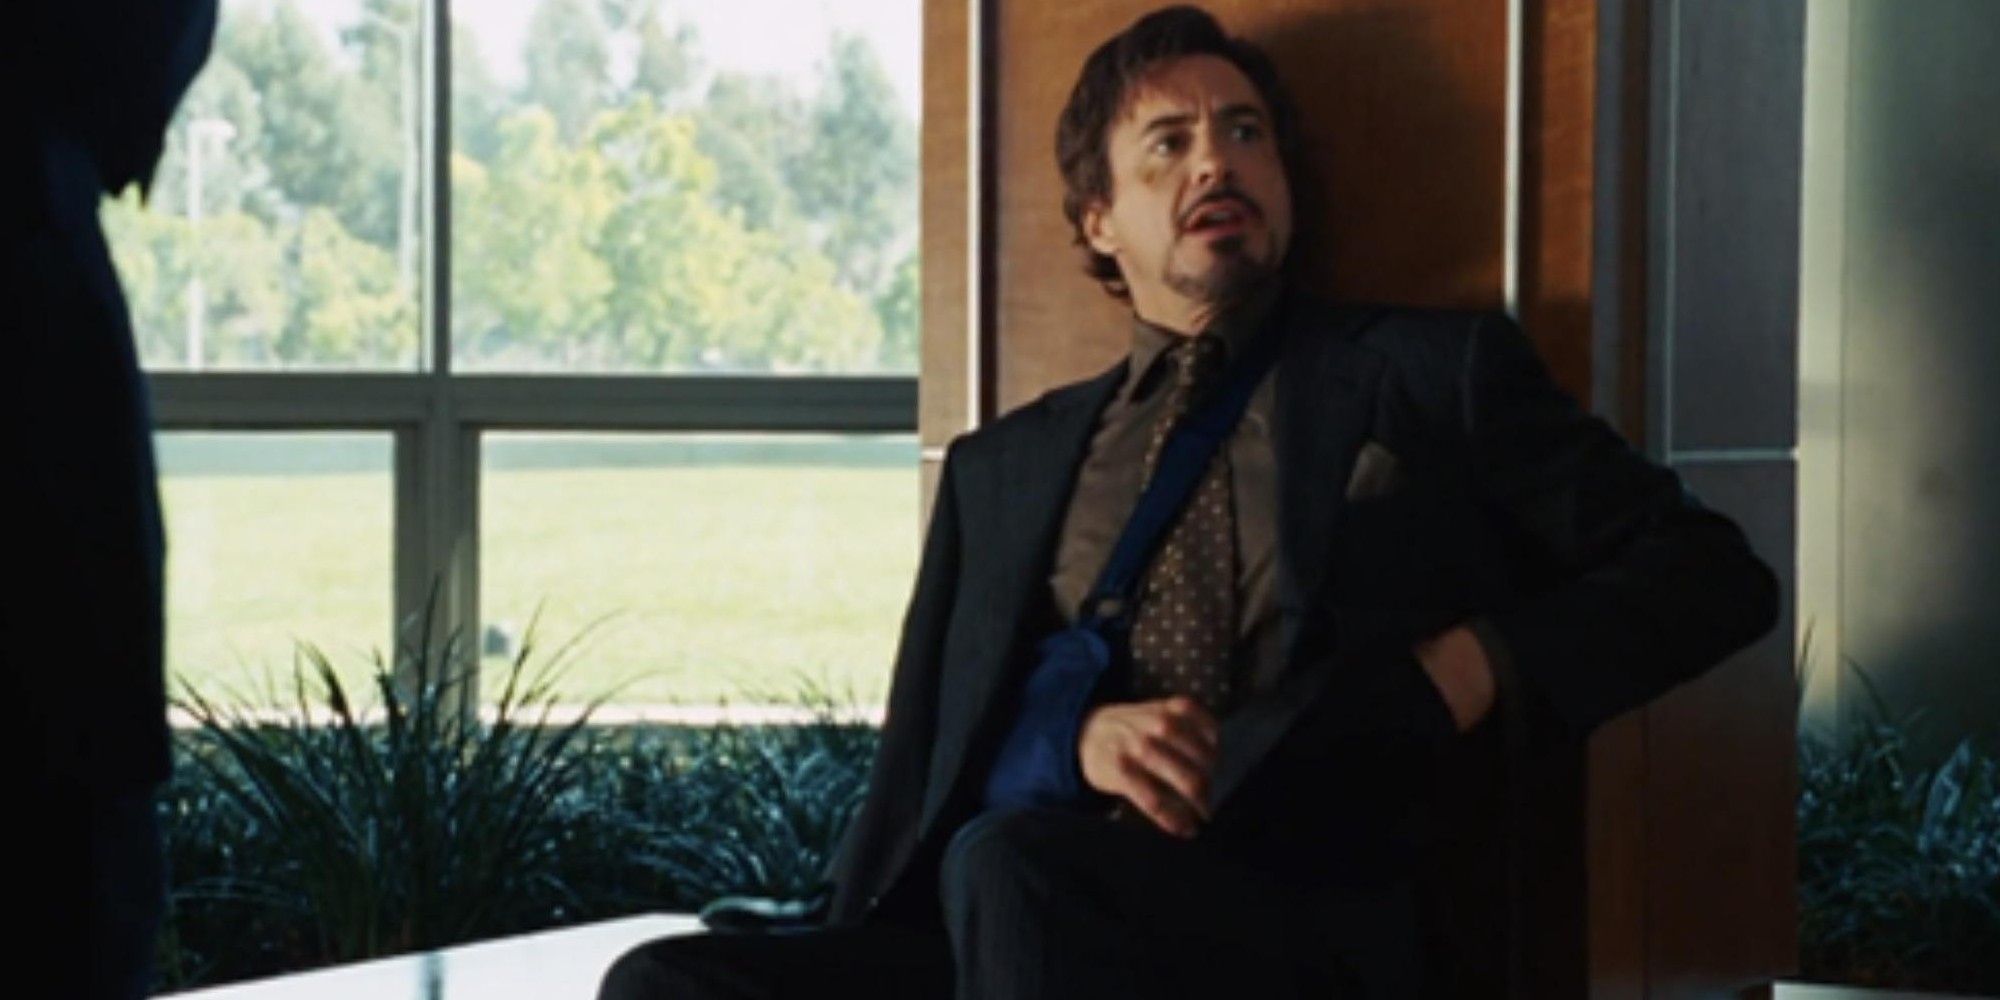 Tony eats a cheeseburger at a press conference in Iron Man